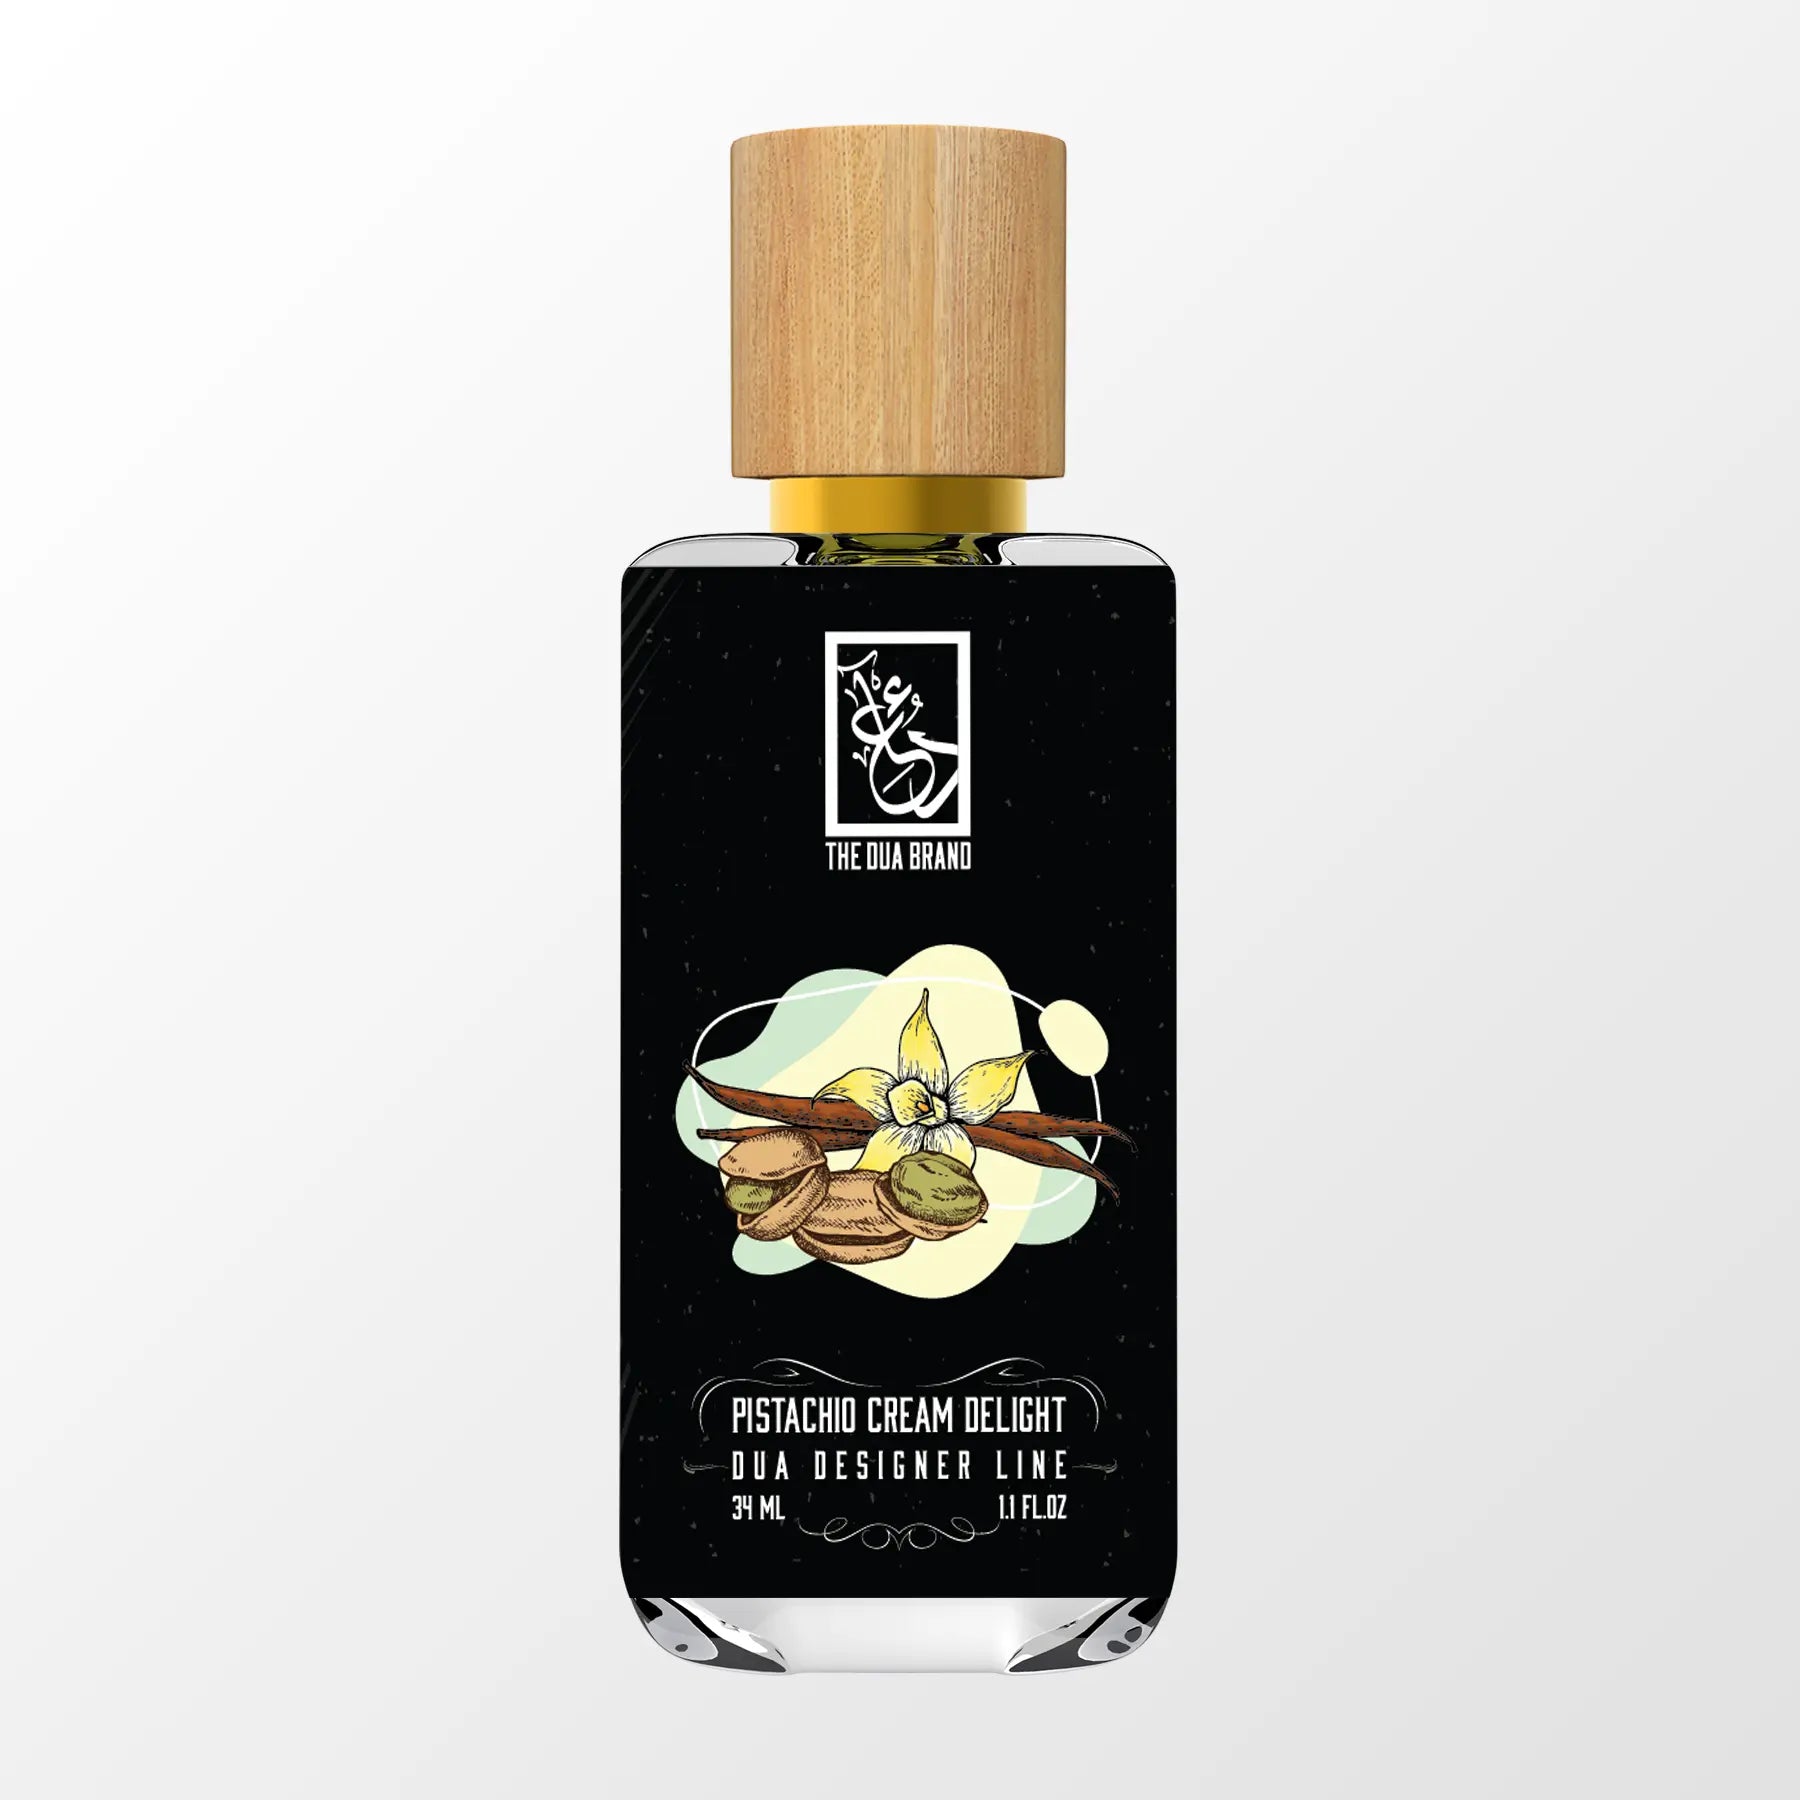 Pistachio Cream Delight - DUA FRAGRANCES - Gourmand - Unisex